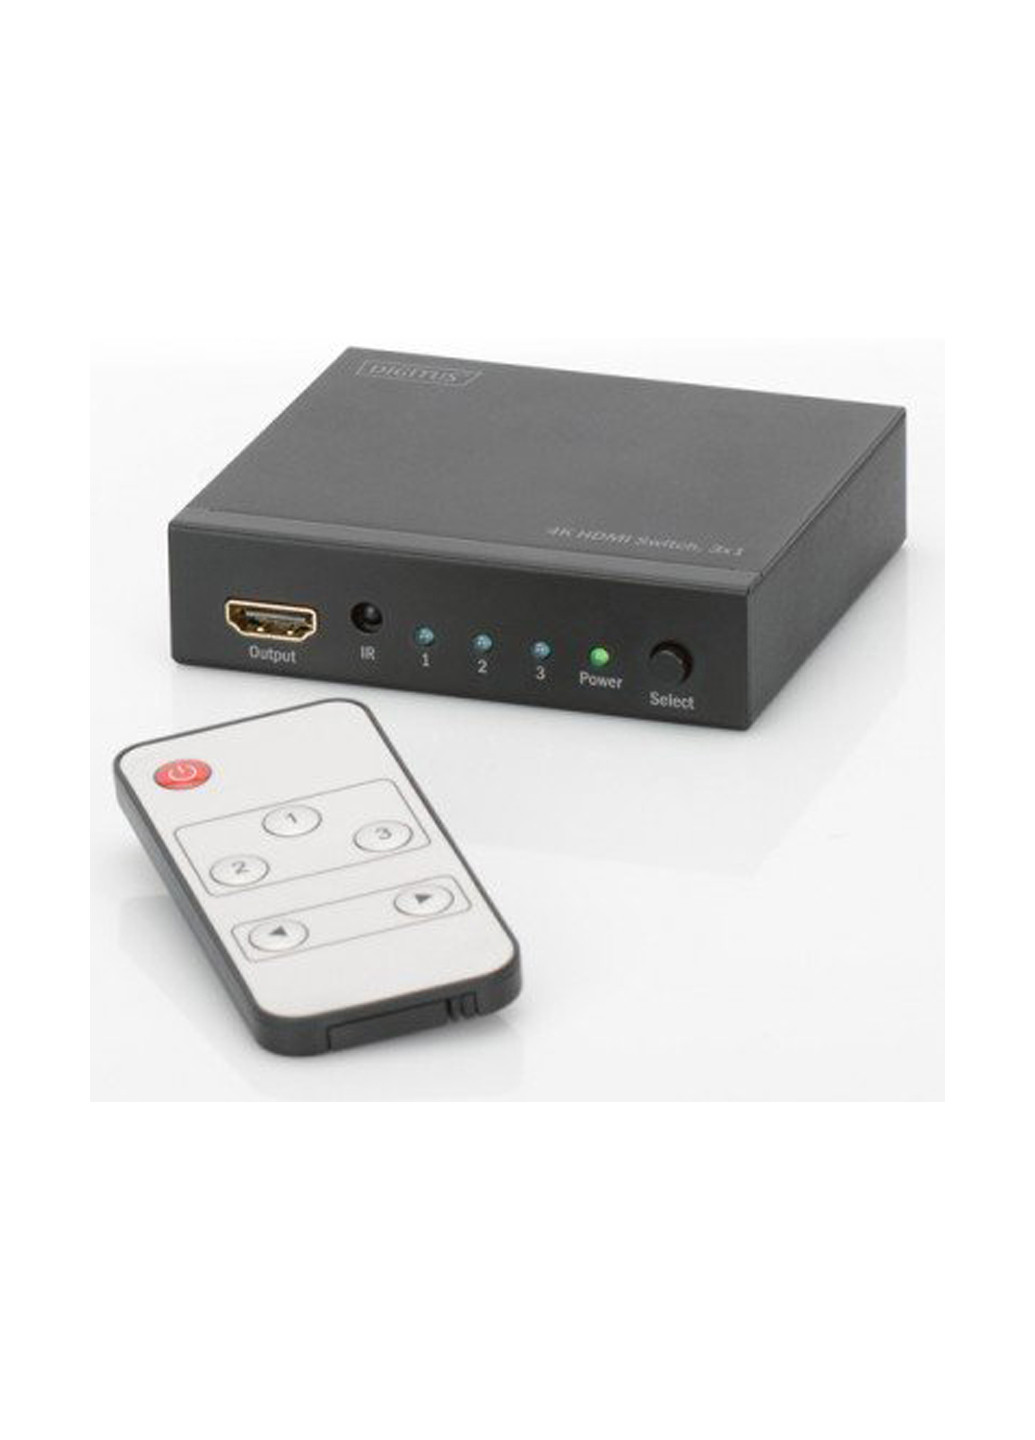 Відеокомутатор HDMI (INx3 - OUTx1), 4K (DS-48304) Digitus hdmi (inx3 - outx1),4k (ds-48304) (136463999)